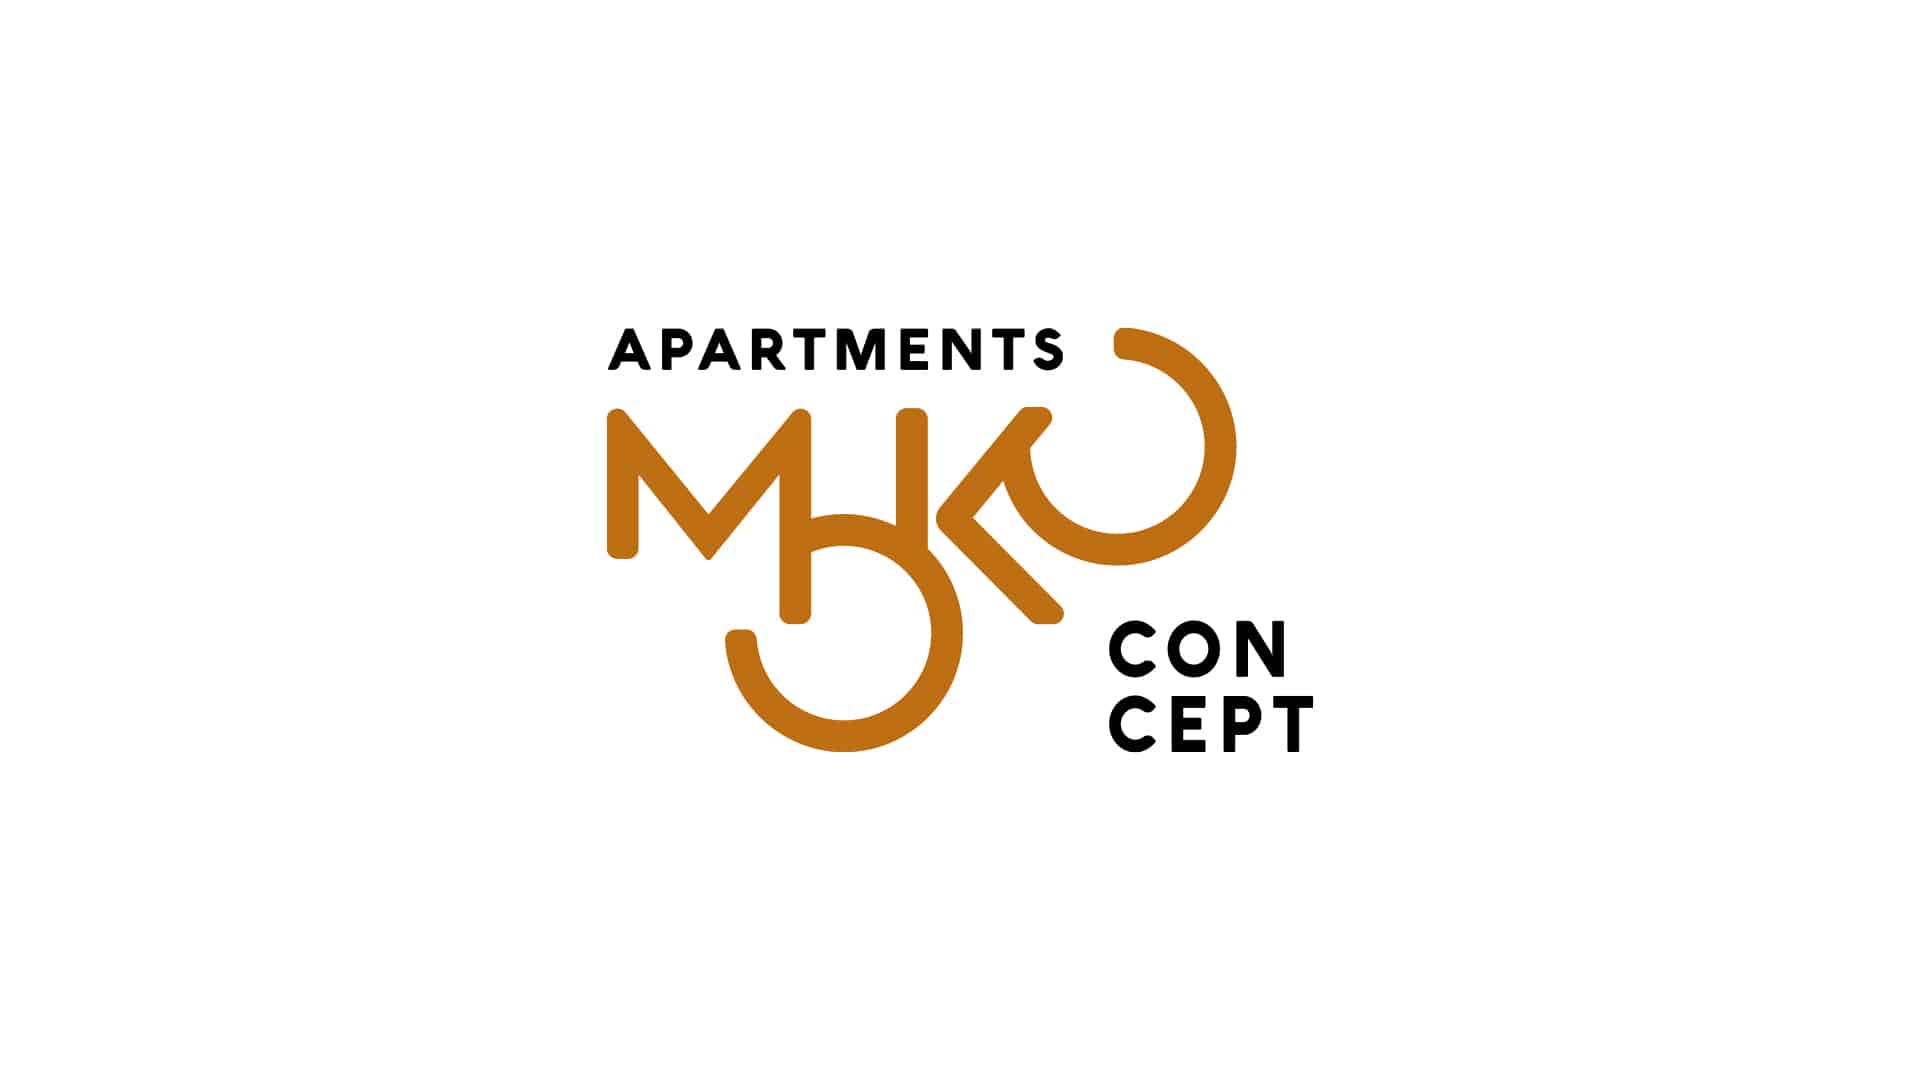 Moko Concept Apartments accelerates sales